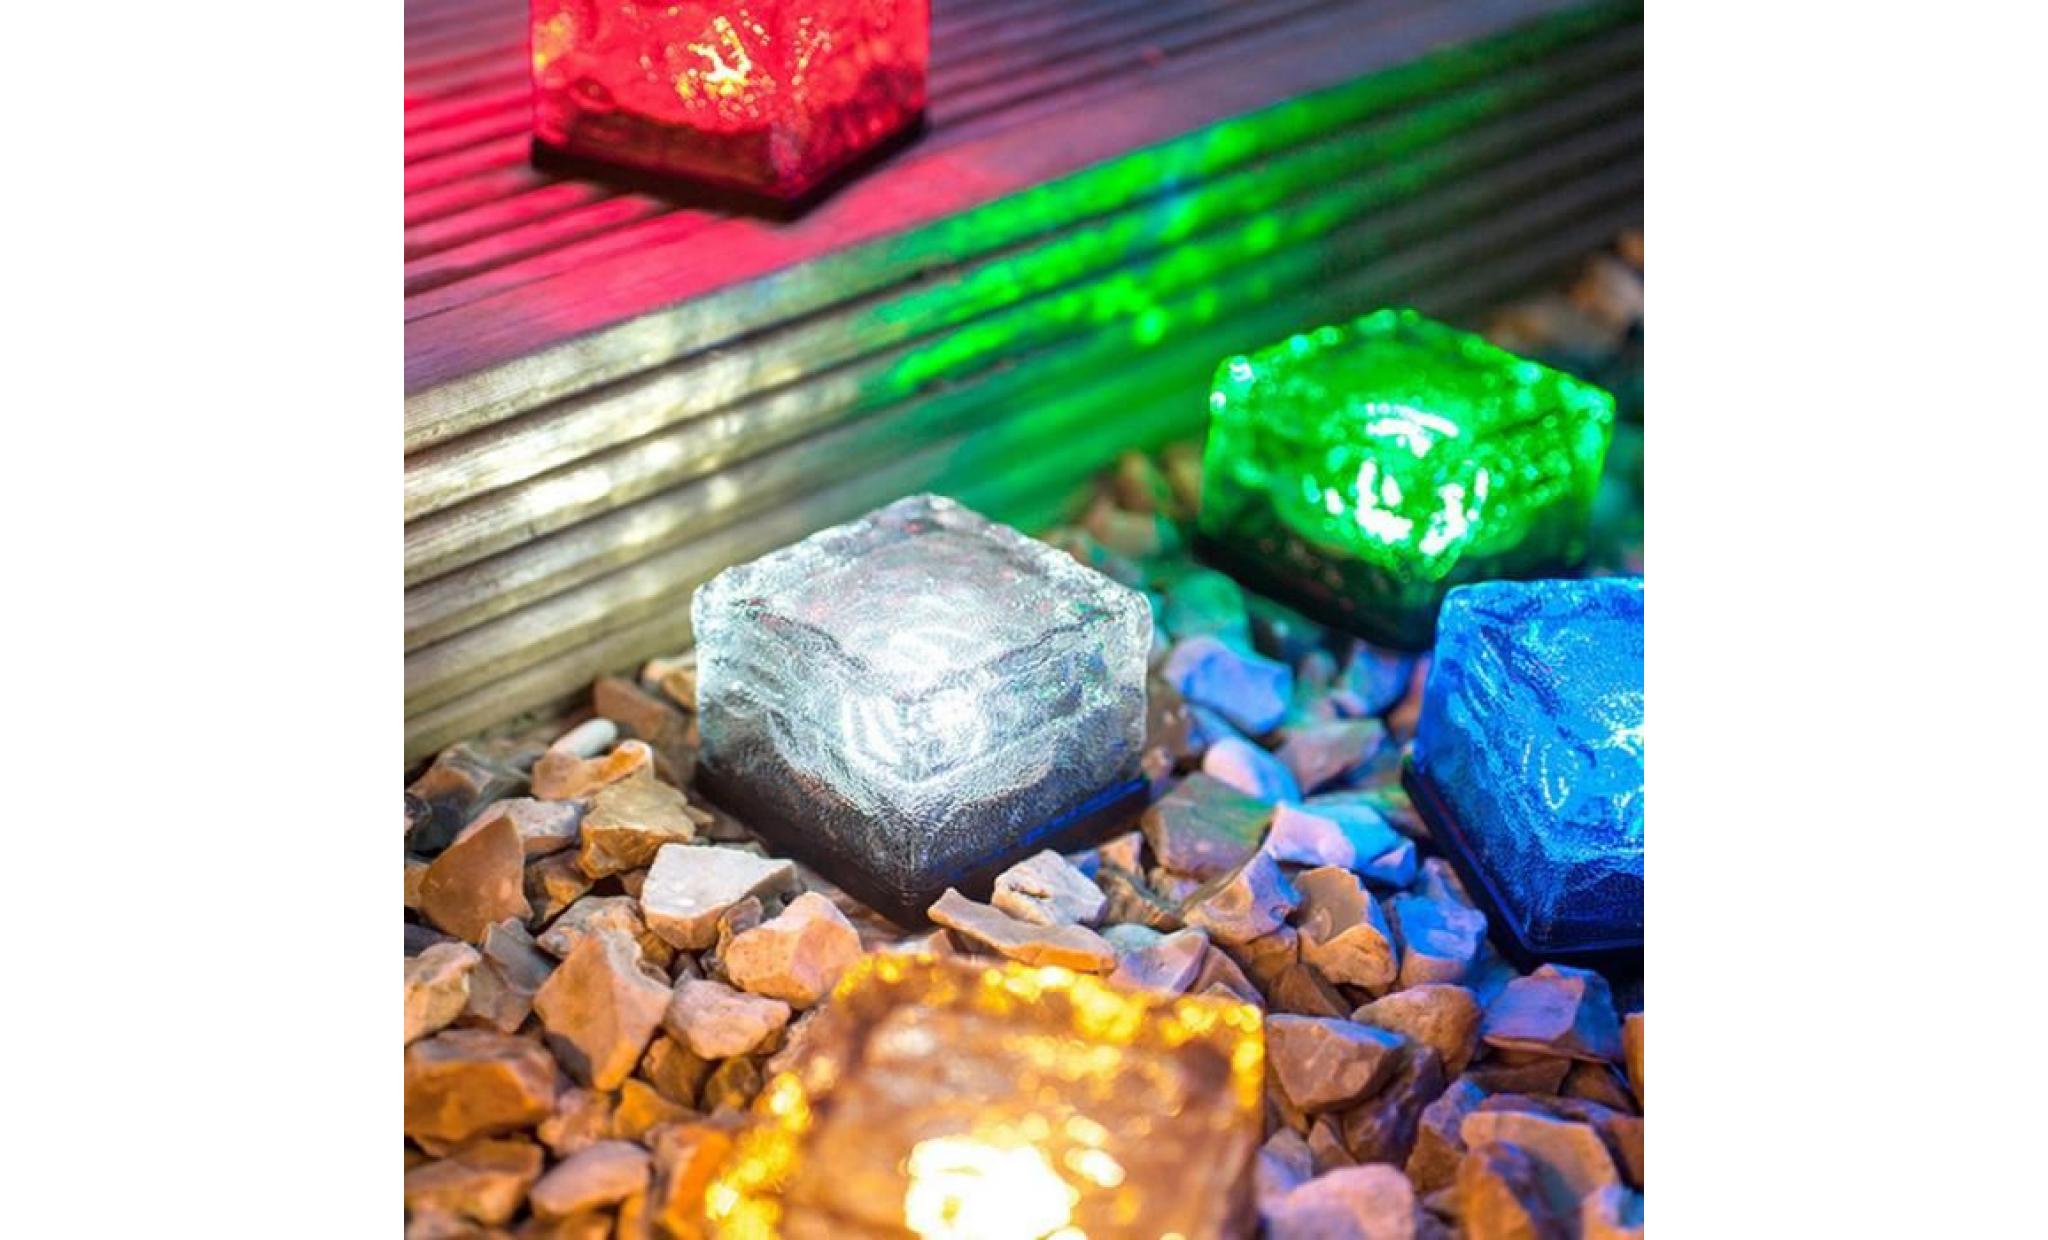 borne solaire solaire imperméable à l'eau led rock light path jardin ice cube brick decor #la 306 pas cher